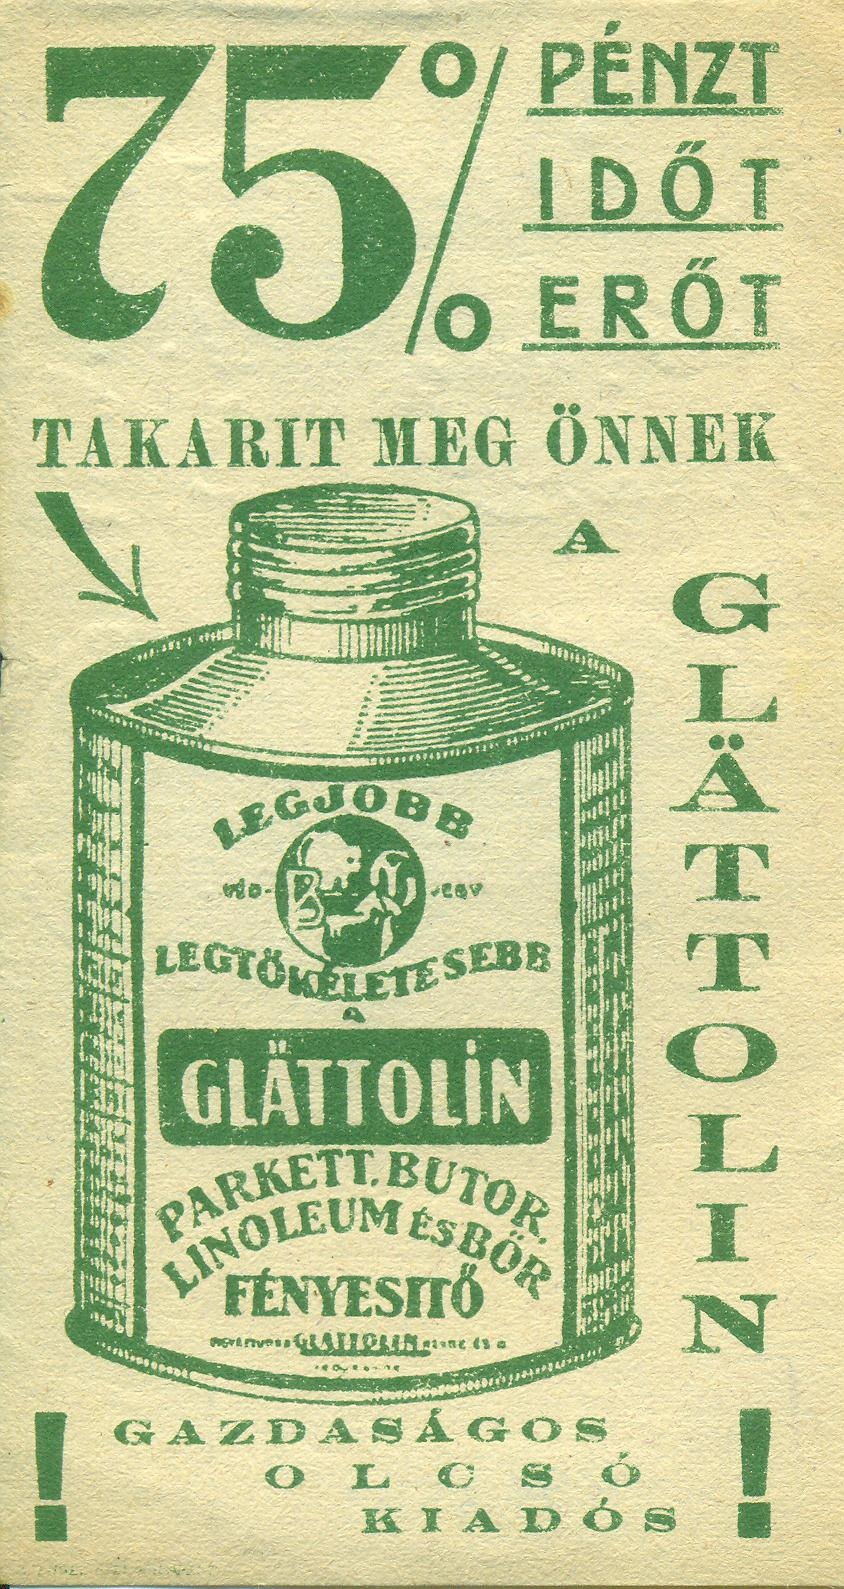 Glättolin parkett, bútor, linóleum és bőr fényesítő (Magyar Kereskedelmi és Vendéglátóipari Múzeum CC BY-NC-SA)